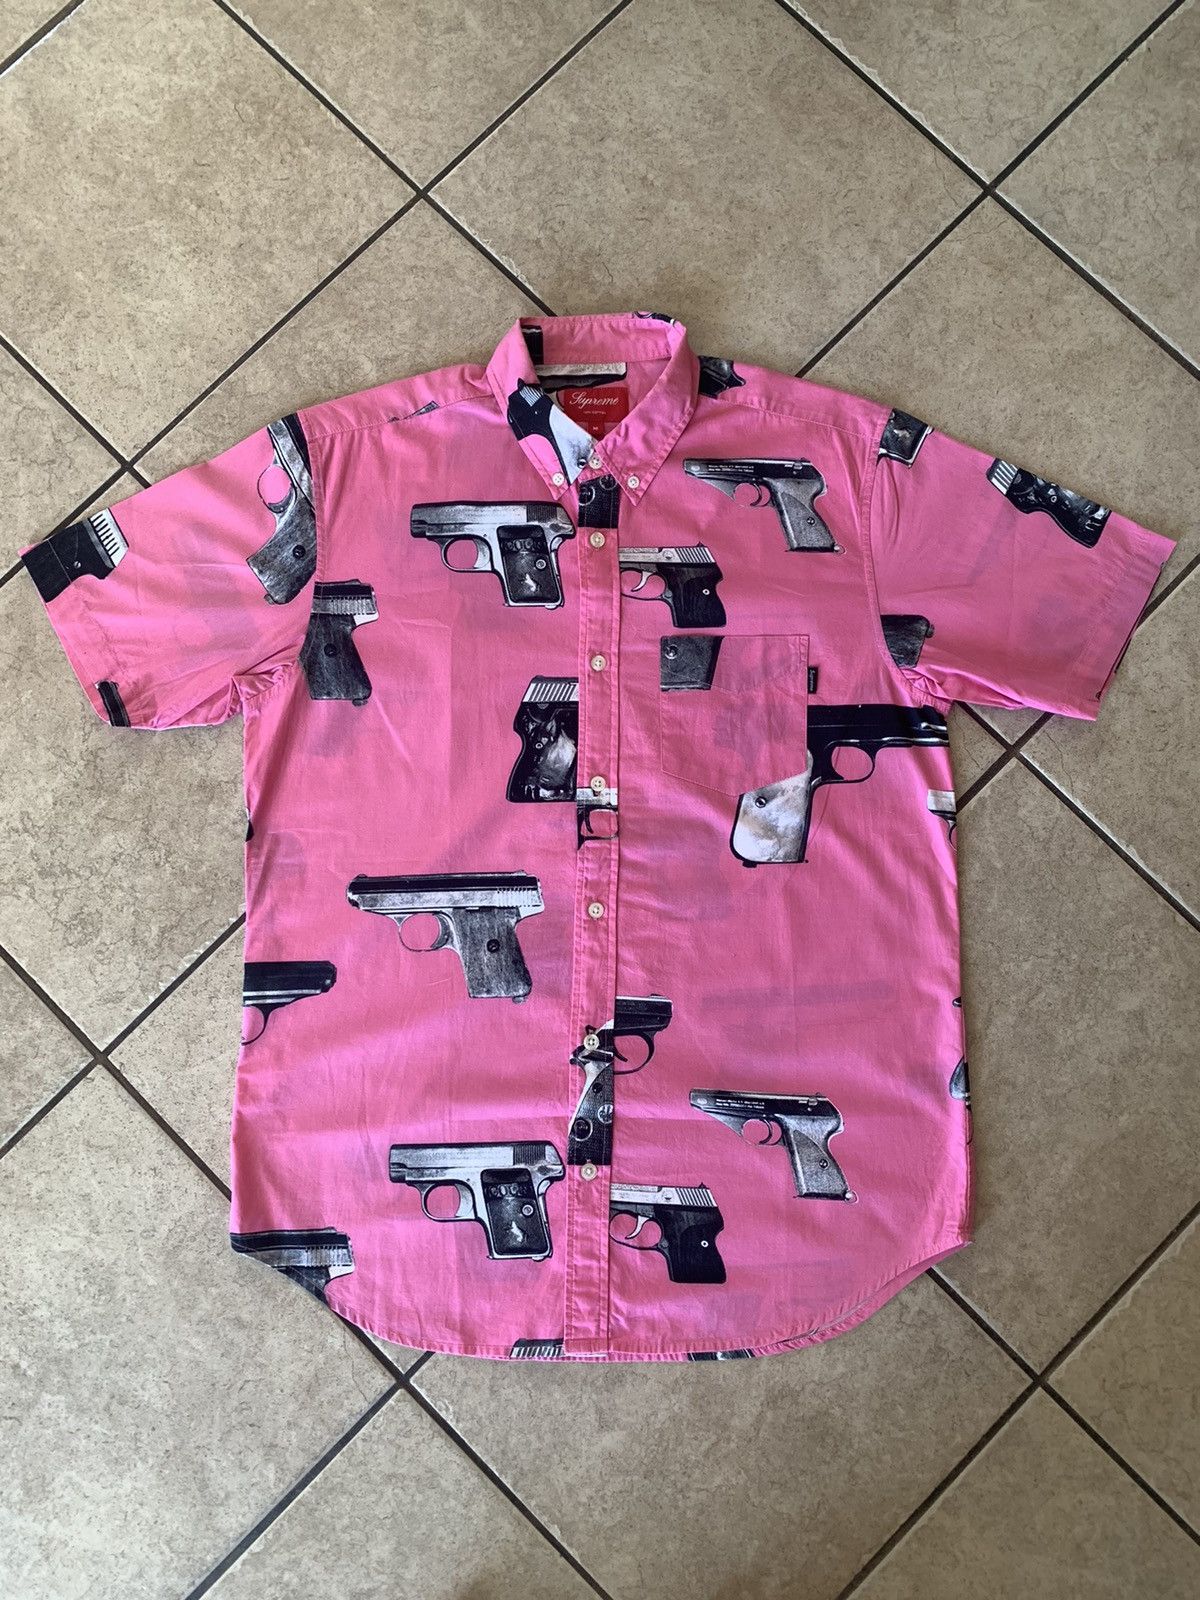 Supreme Guns Button Up Shirt SS 2013 Pink Small 